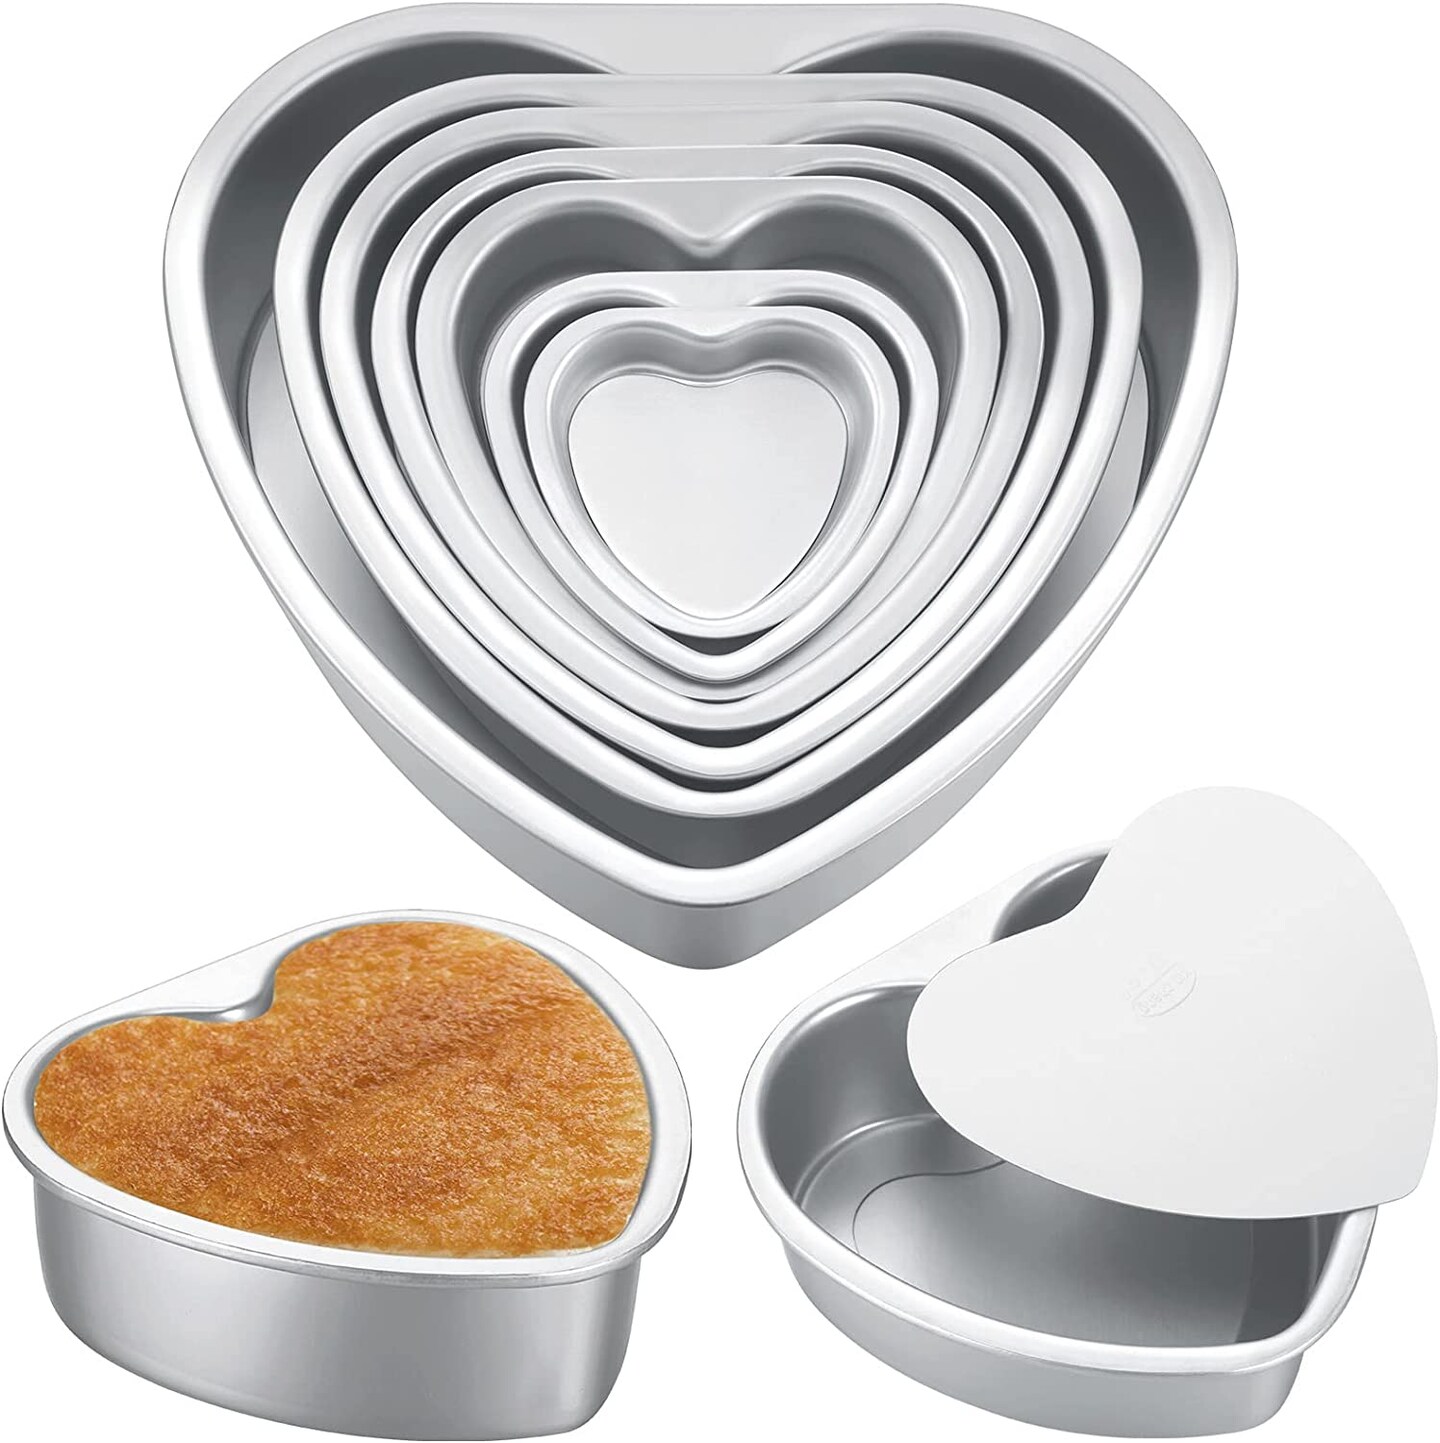 Aluminum Heart Shaped Cake Pan Bake 7 pcs